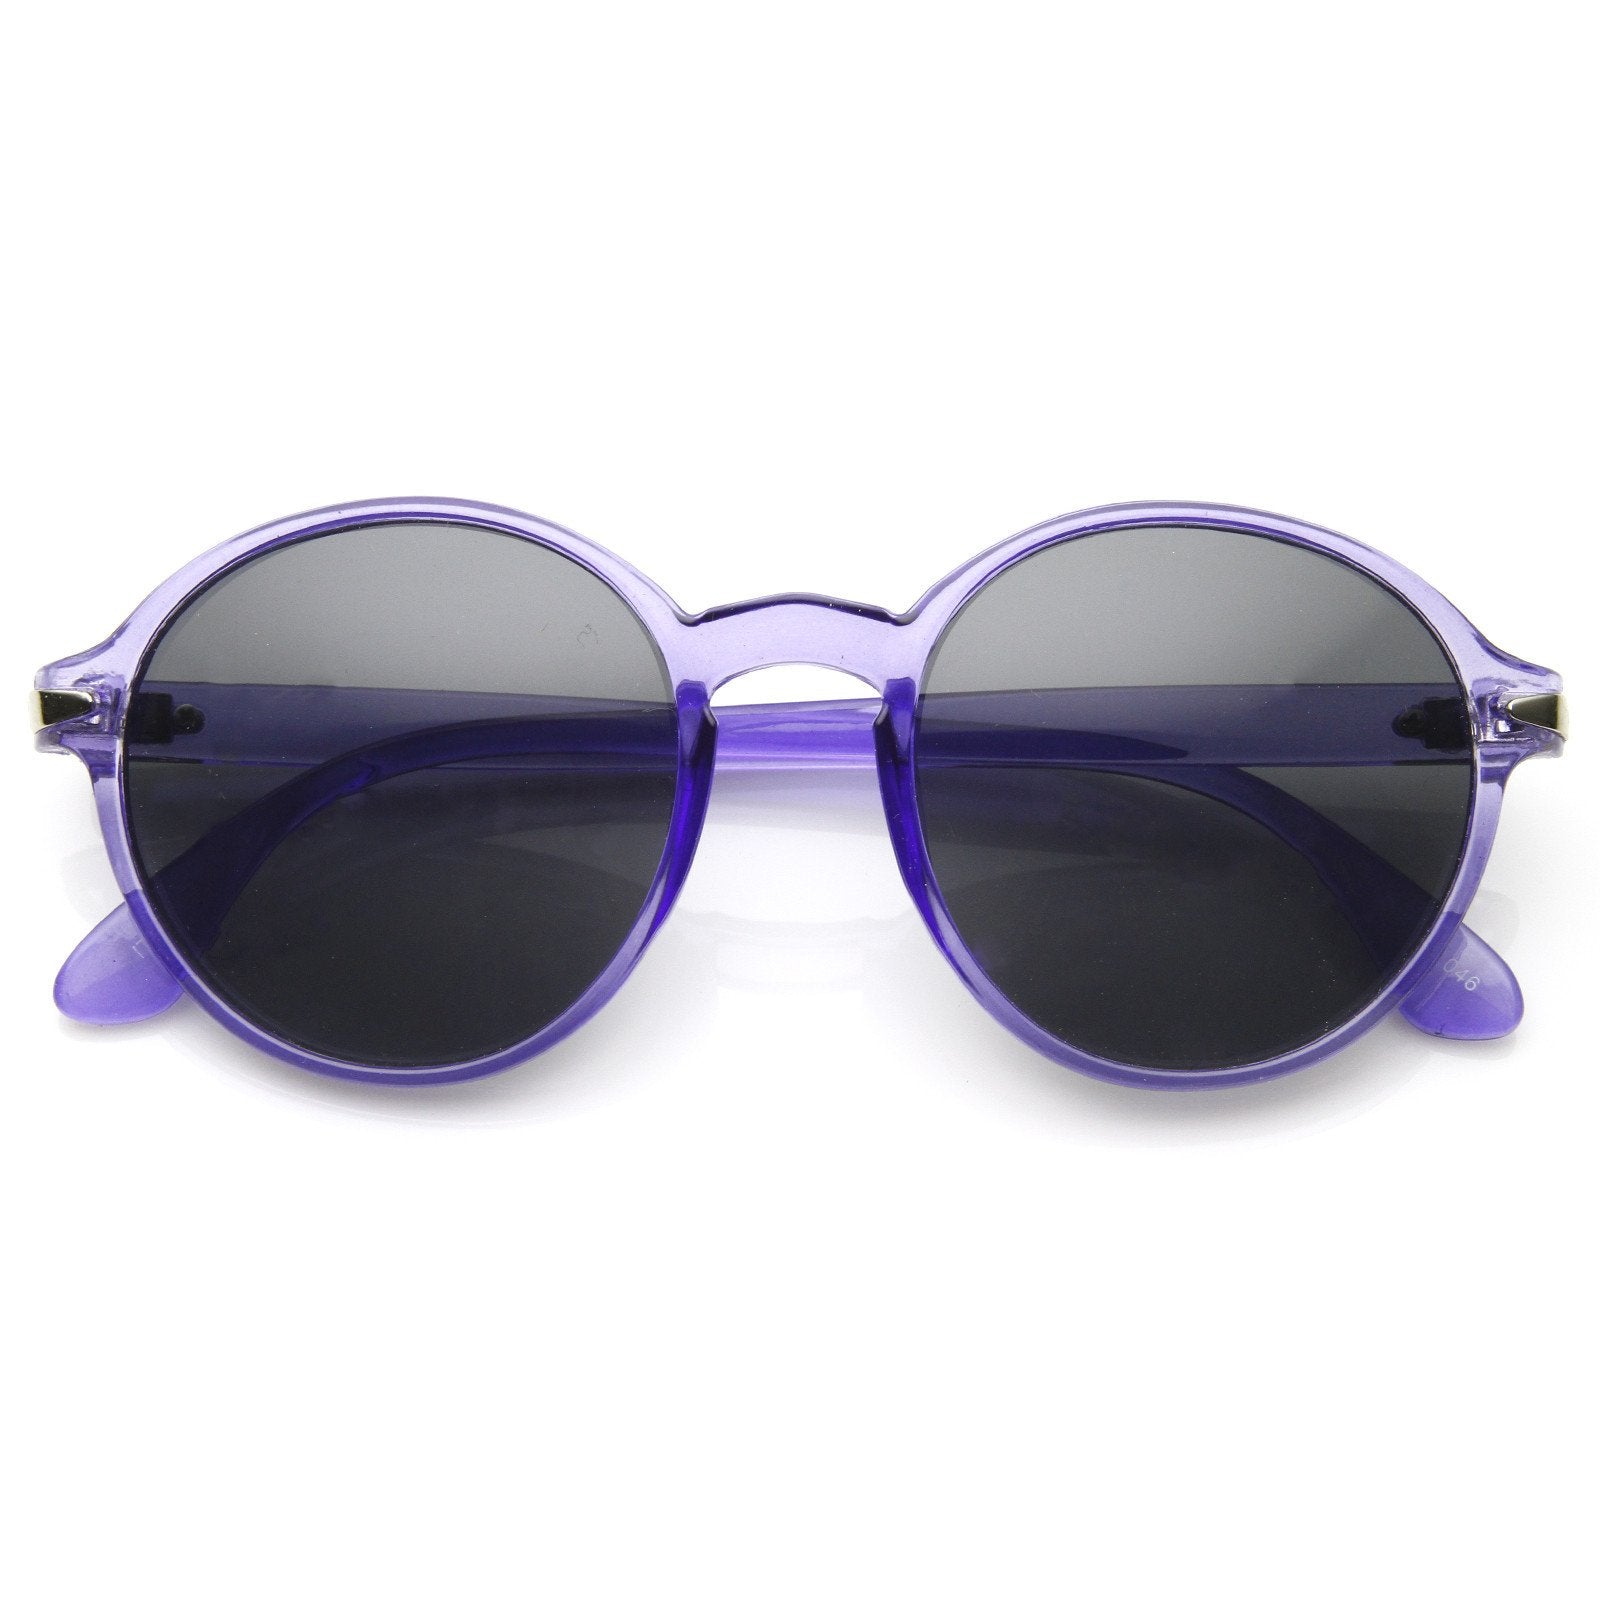 Retro Indie Dapper Round Fashion Sunglasses - zeroUV